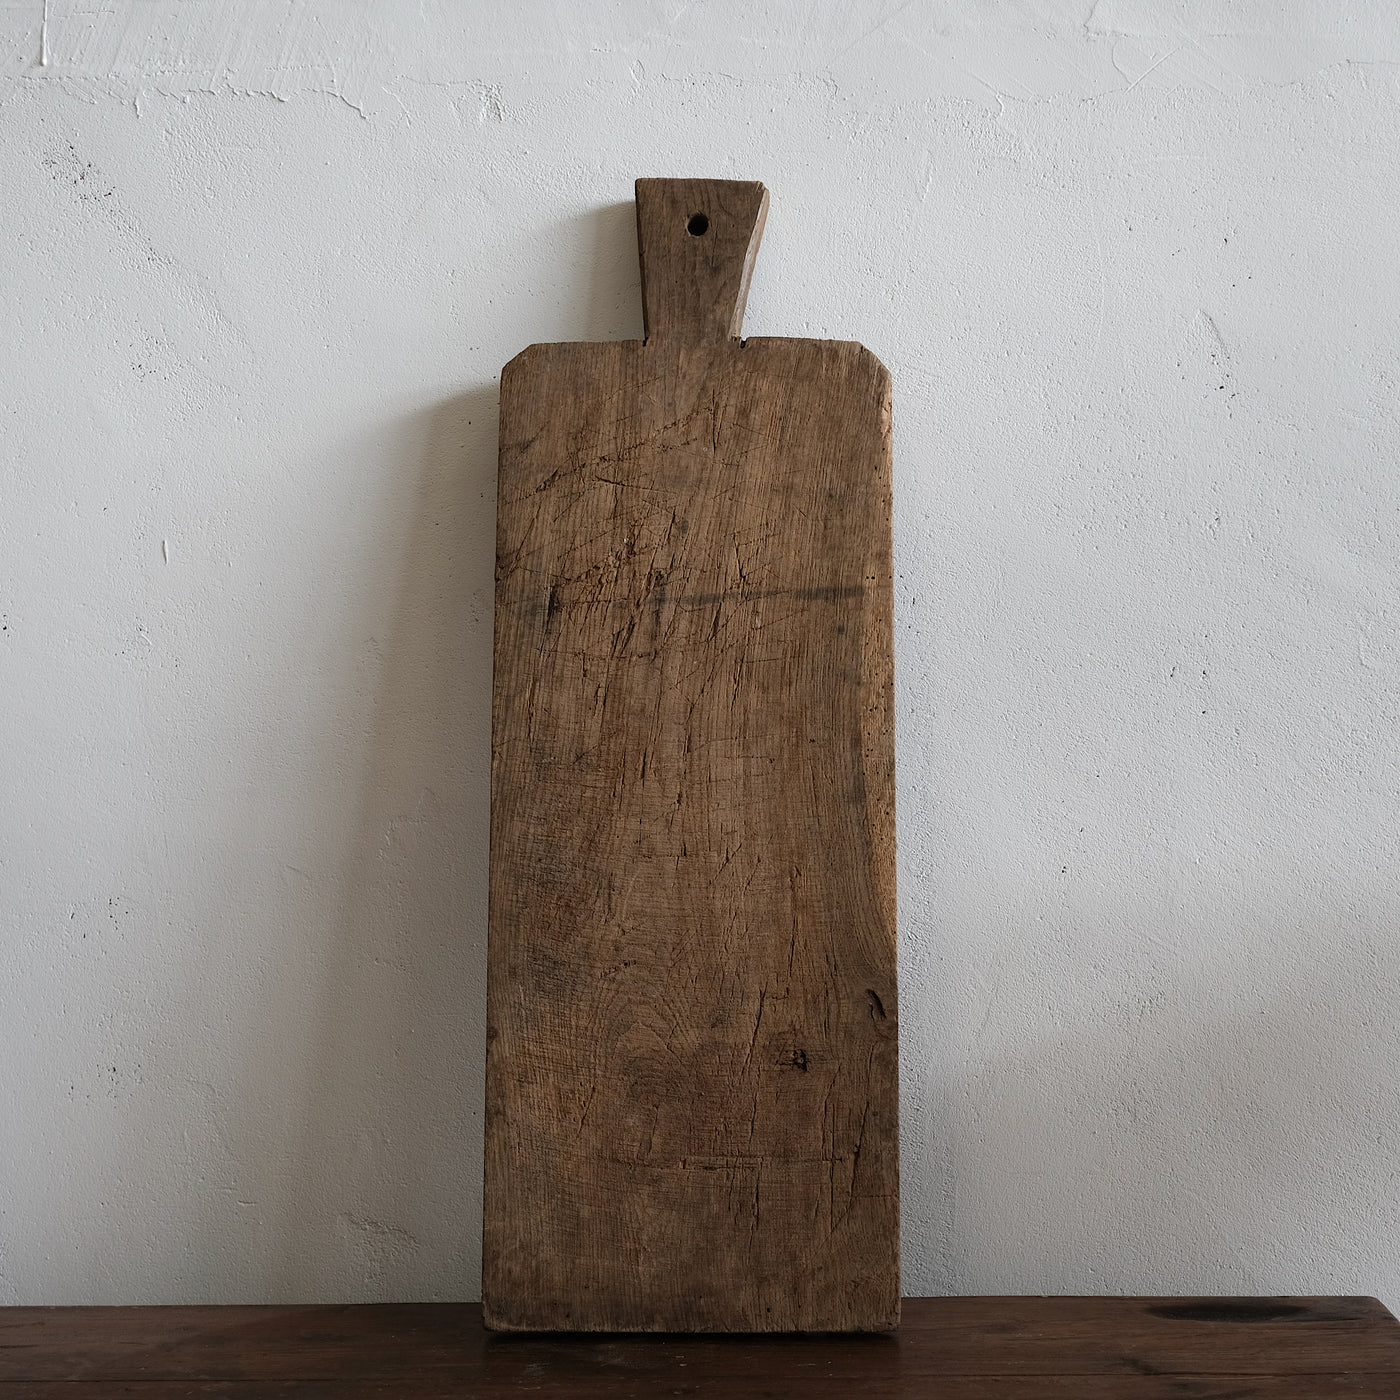 Mazel - Old wooden board n°1